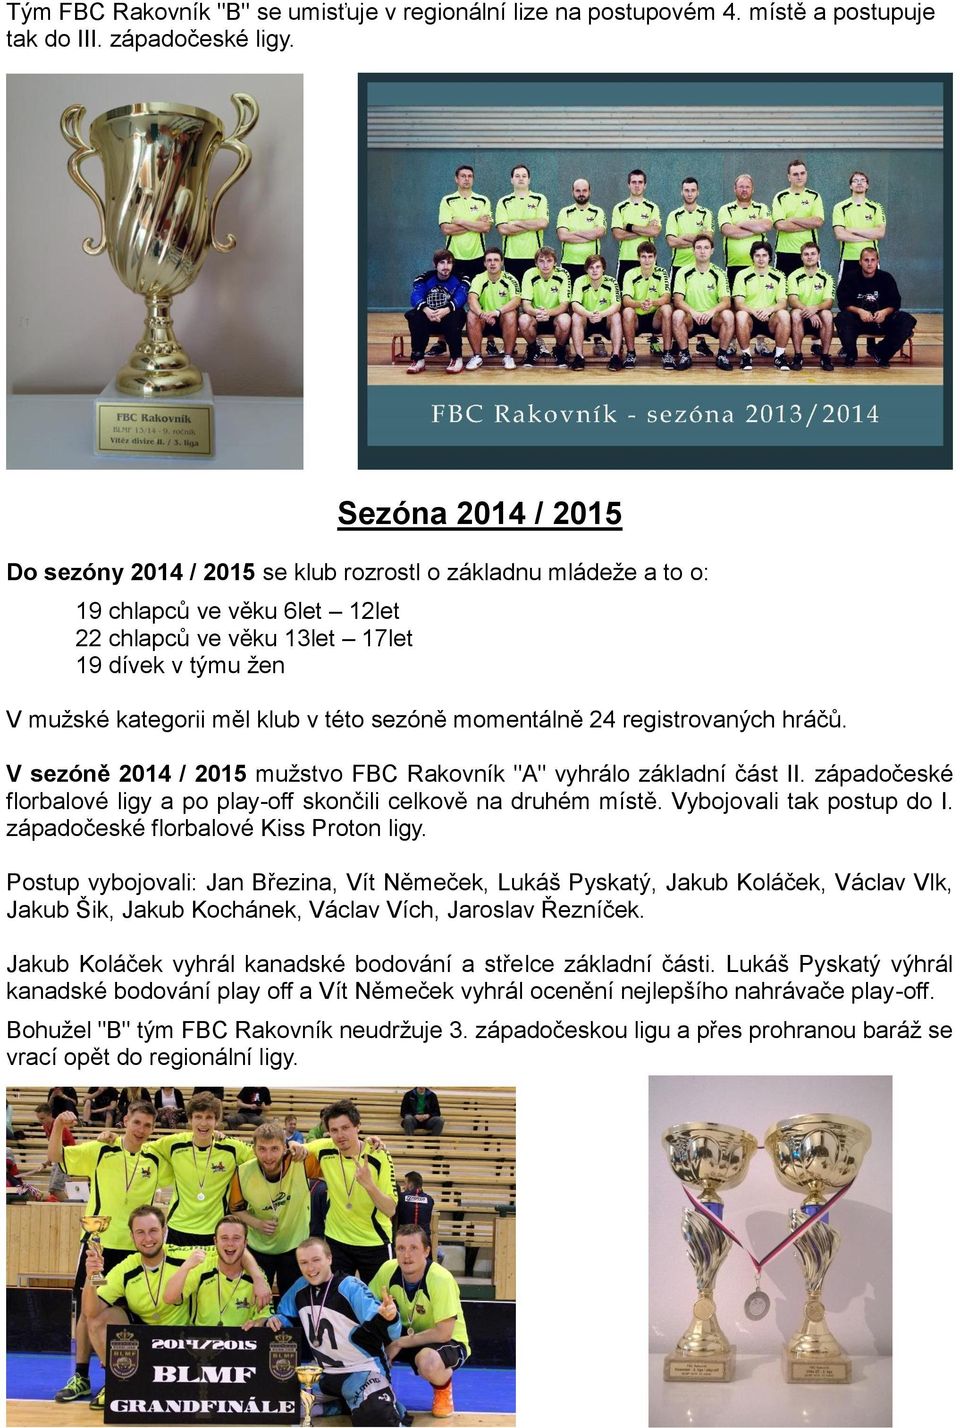 této sezóně momentálně 24 registrovaných hráčů. V sezóně 2014 / 2015 mužstvo FBC Rakovník "A" vyhrálo základní část II. západočeské florbalové ligy a po play-off skončili celkově na druhém místě.